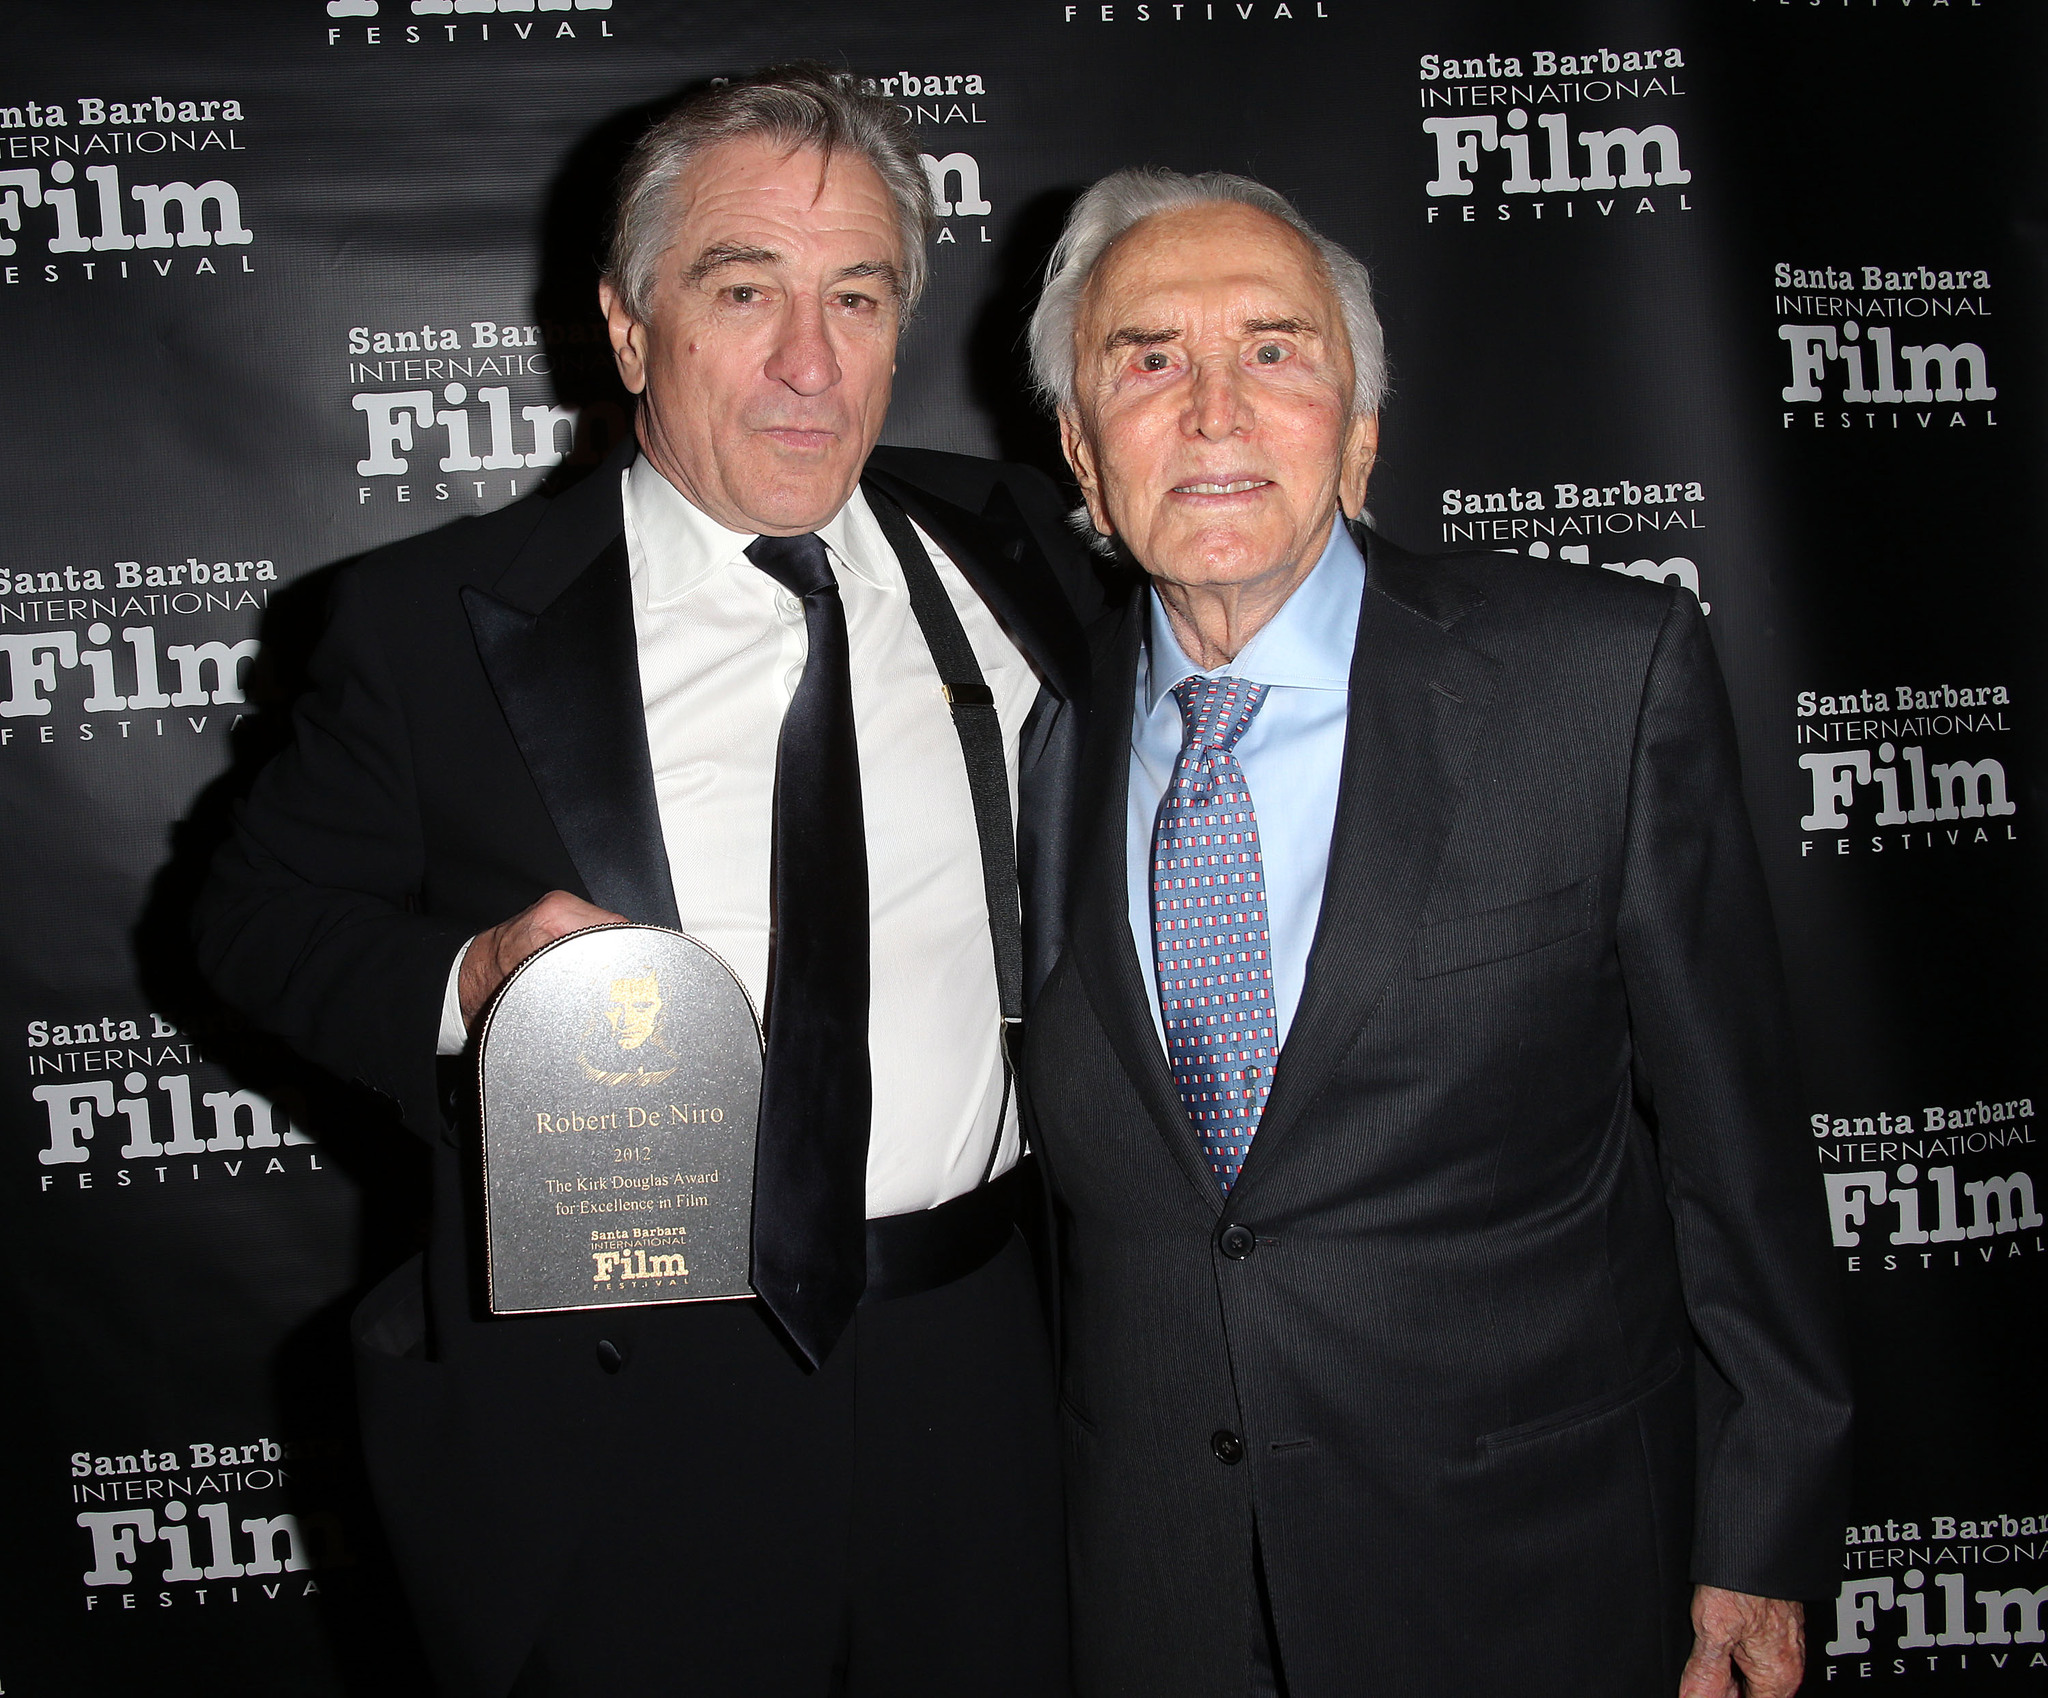 Kirk Douglas and Robert De Niro